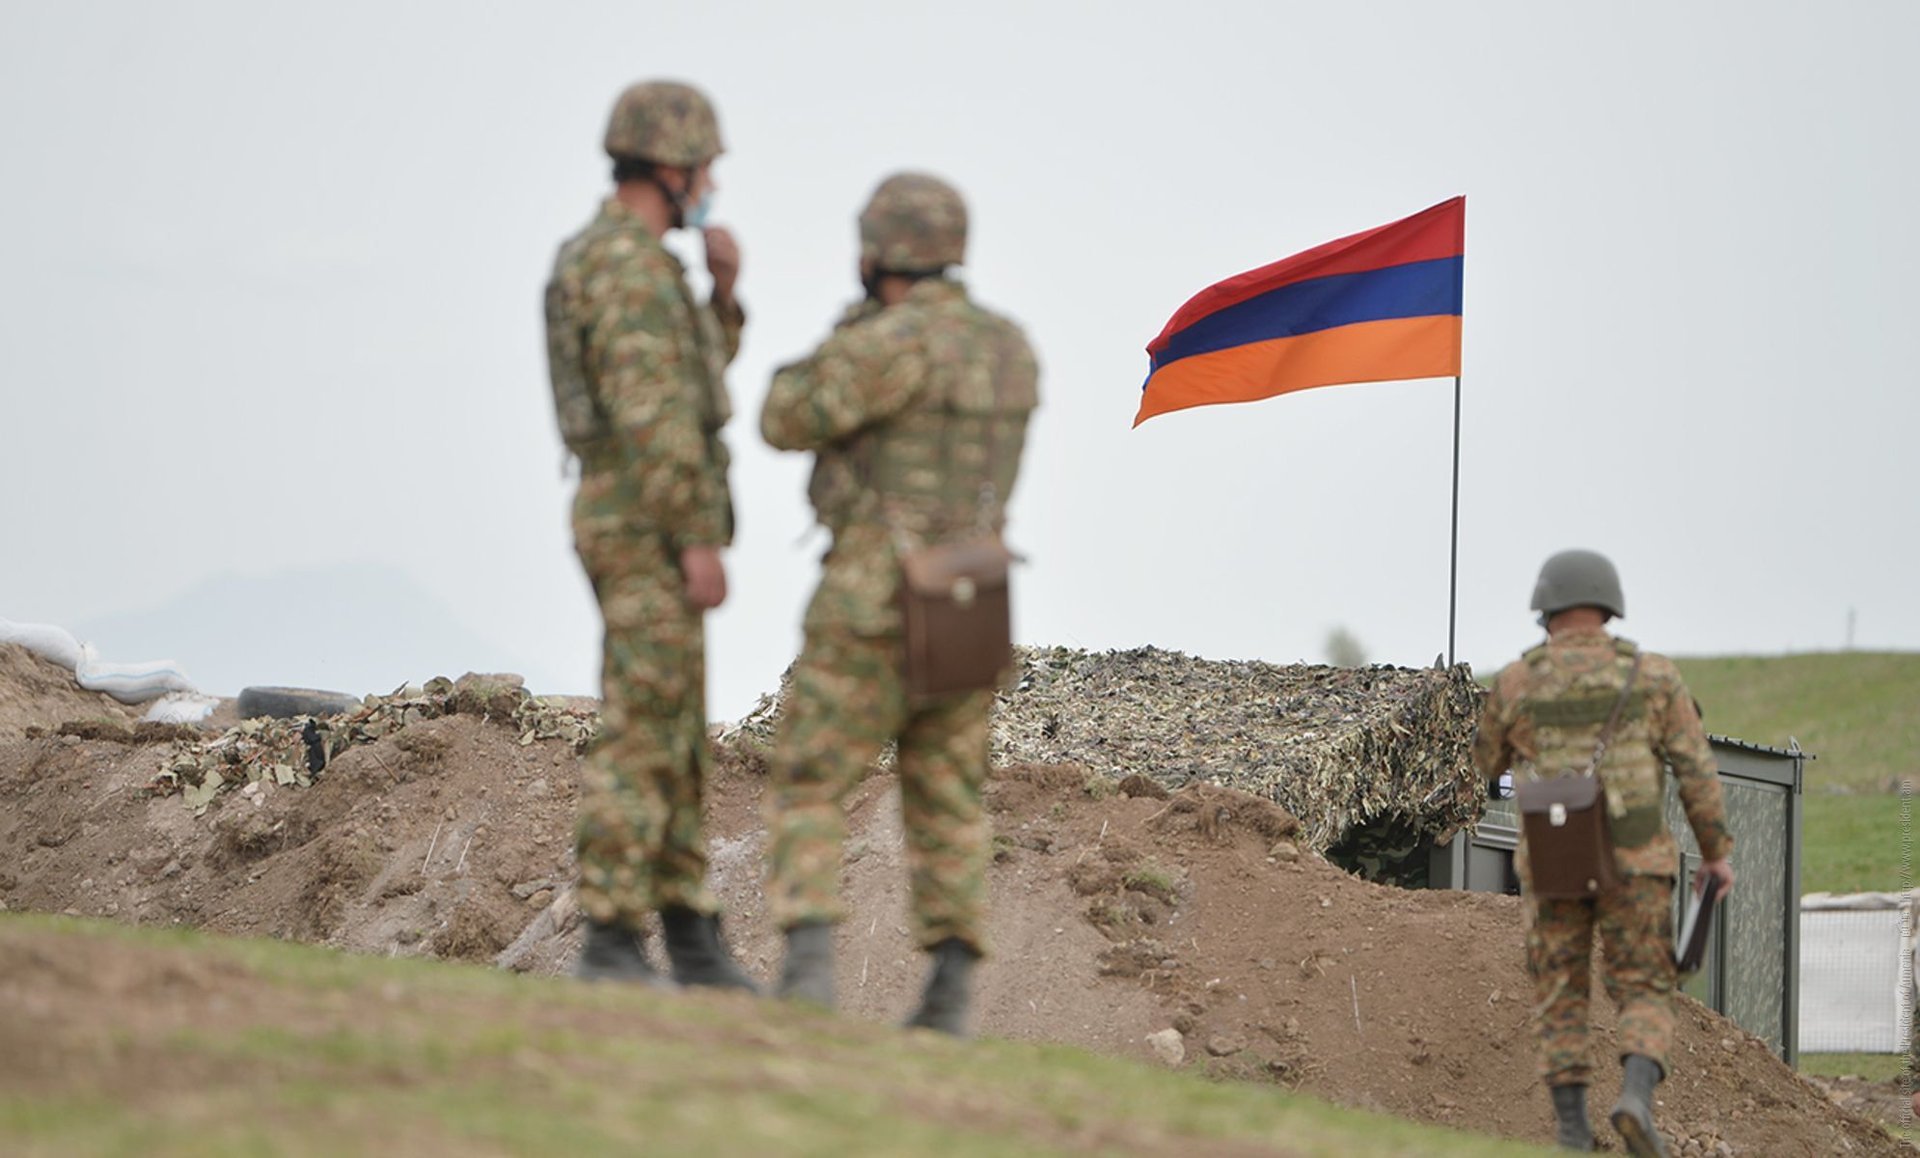 Армения граница с турцией